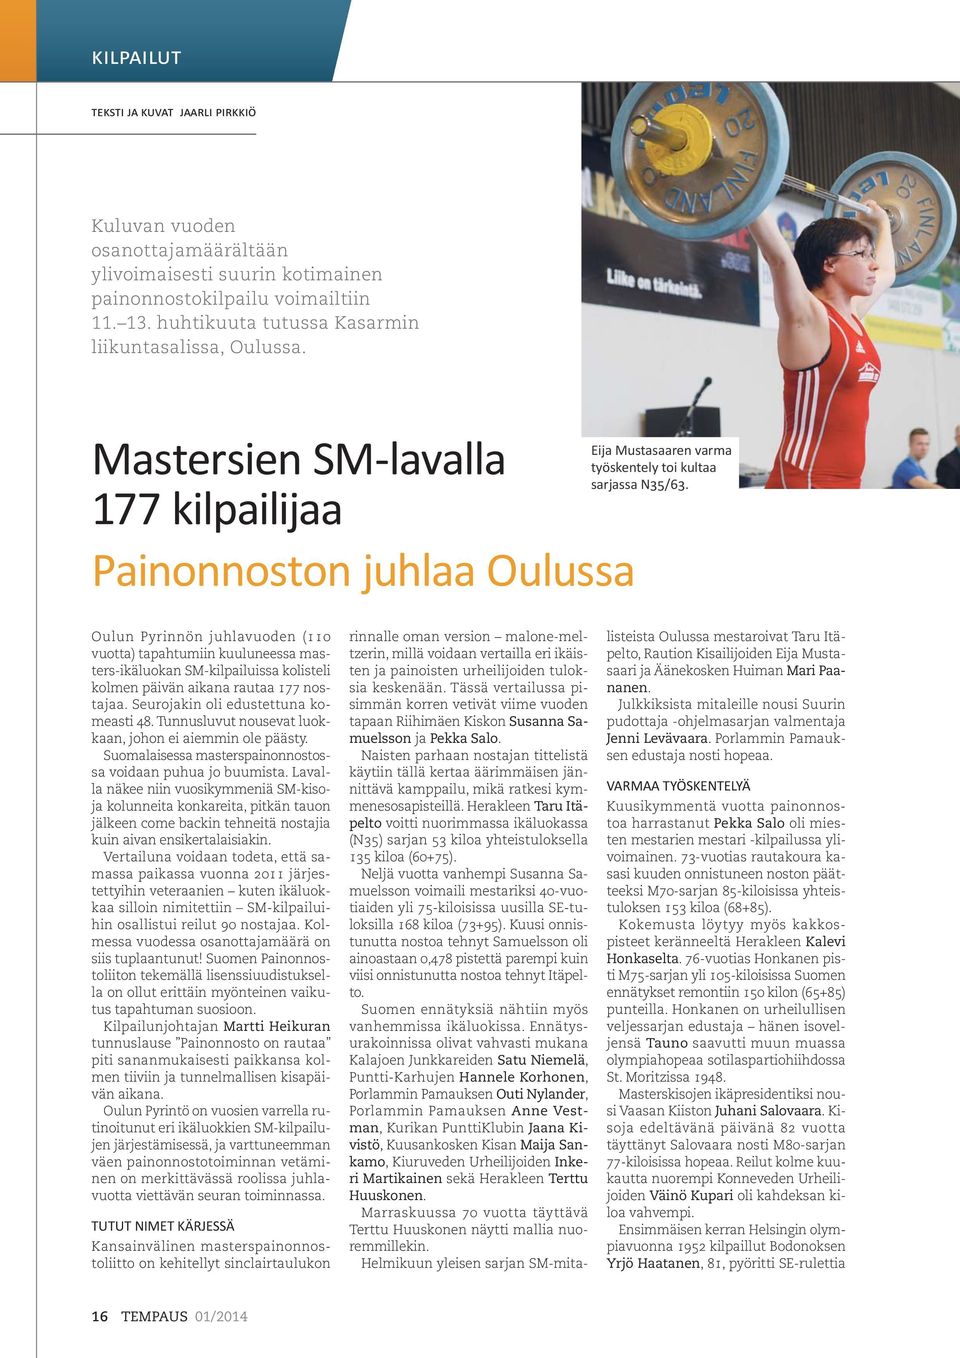 Oulun Pyrinnön juhlavuoden (110 vuotta) tapahtumiin kuuluneessa masters-ikäluokan SM-kilpailuissa kolisteli kolmen päivän aikana rautaa 177 nostajaa. Seurojakin oli edustettuna komeasti 48.